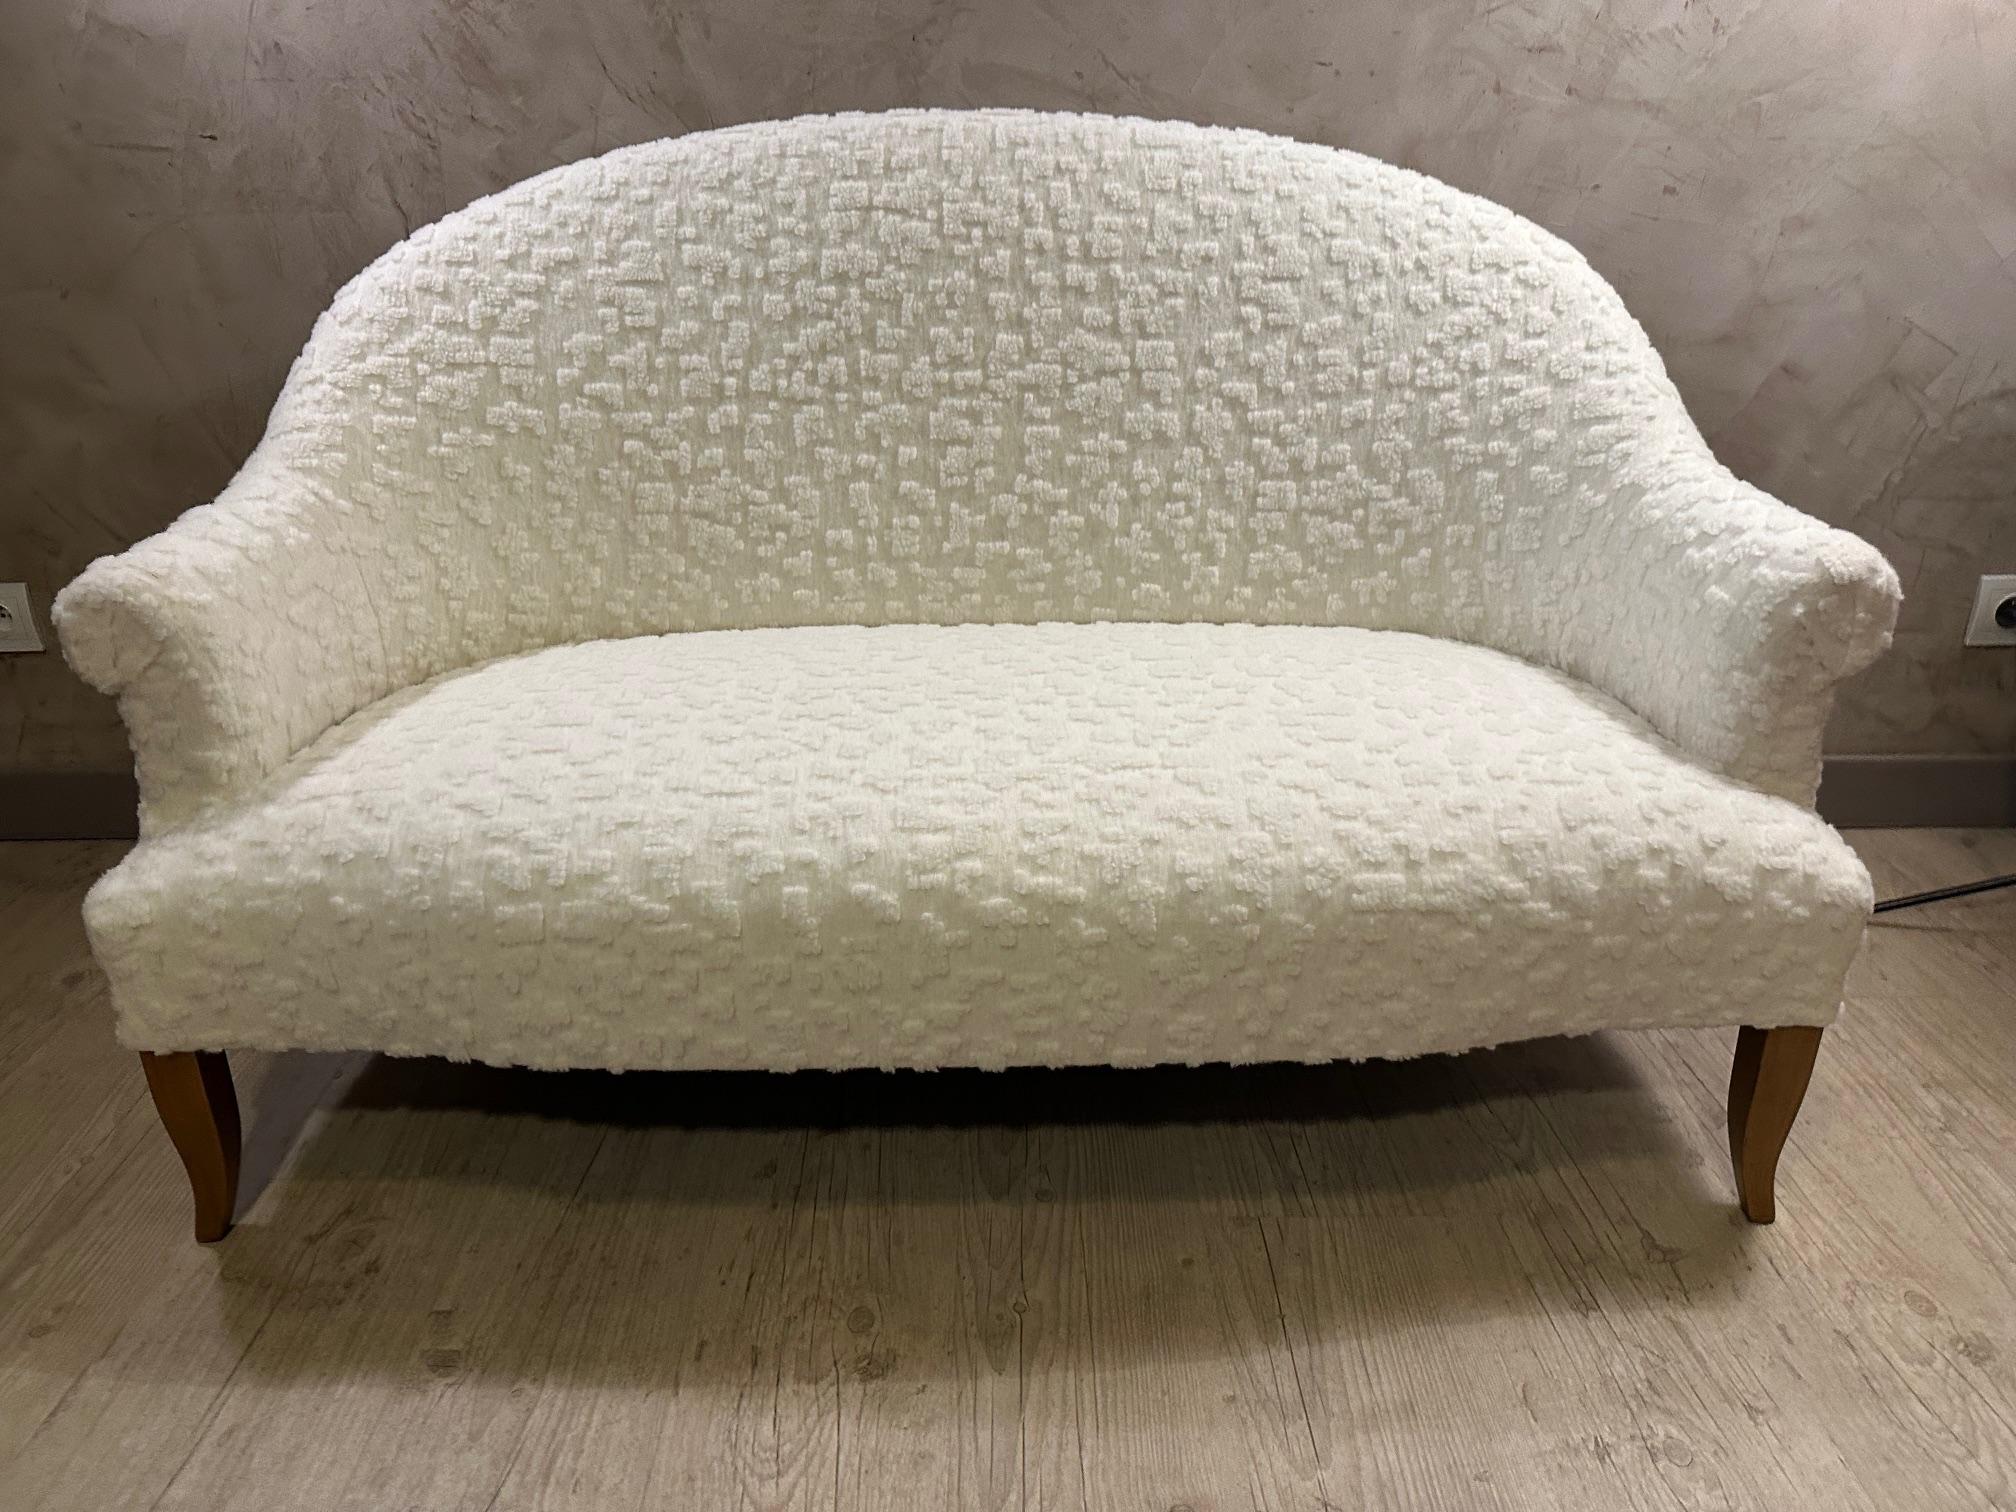 Sehr schönes zweisitziges Crapaud-Sofa, das von uns selbst (wir sind auch Polsterer) mit einem schönen schafsweichen Wollstoff des Stoffhauses Larsen neu gepolstert wurde. Rohe Holzbeine. 
Sehr bequem. Ideal für ein kleines Wohnzimmer oder einen